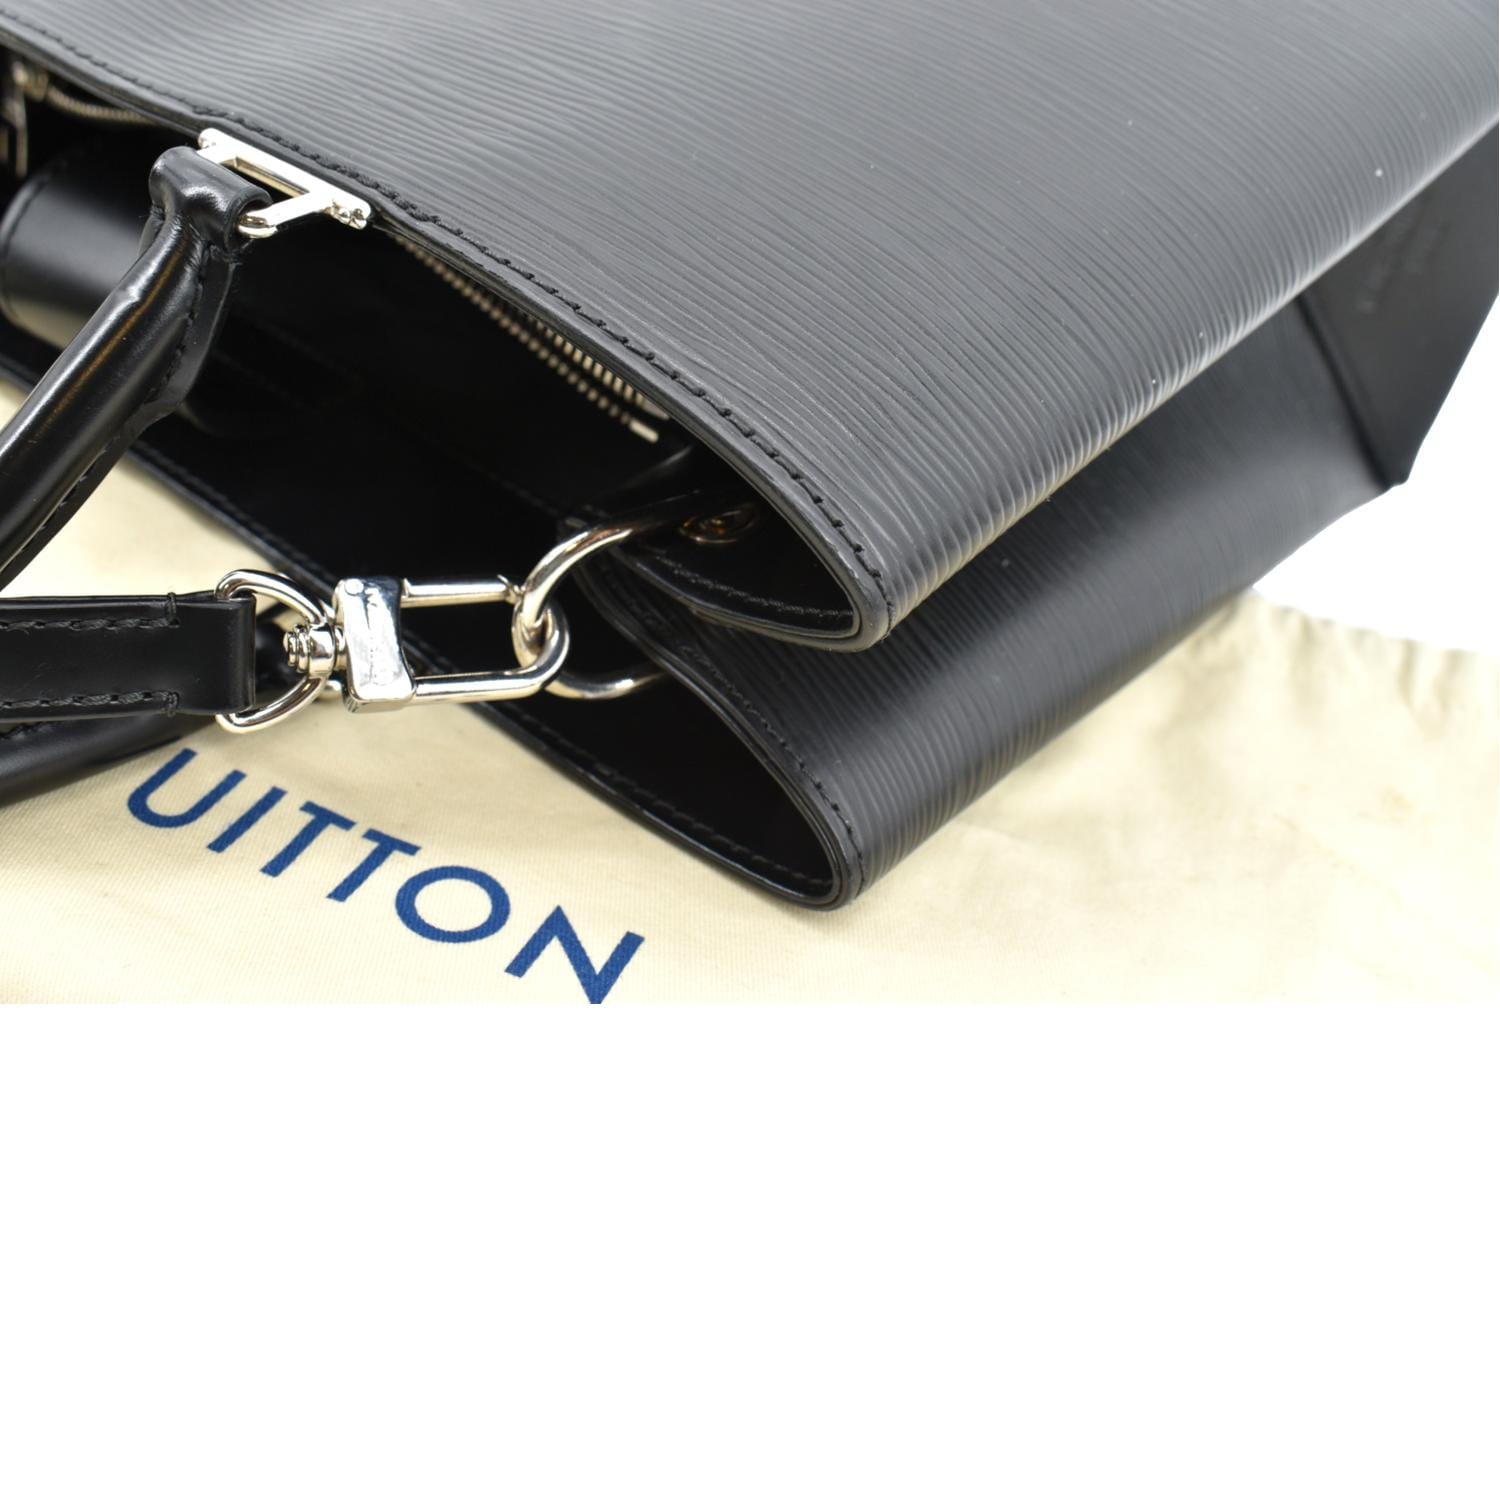 Lussac Epi – Keeks Designer Handbags